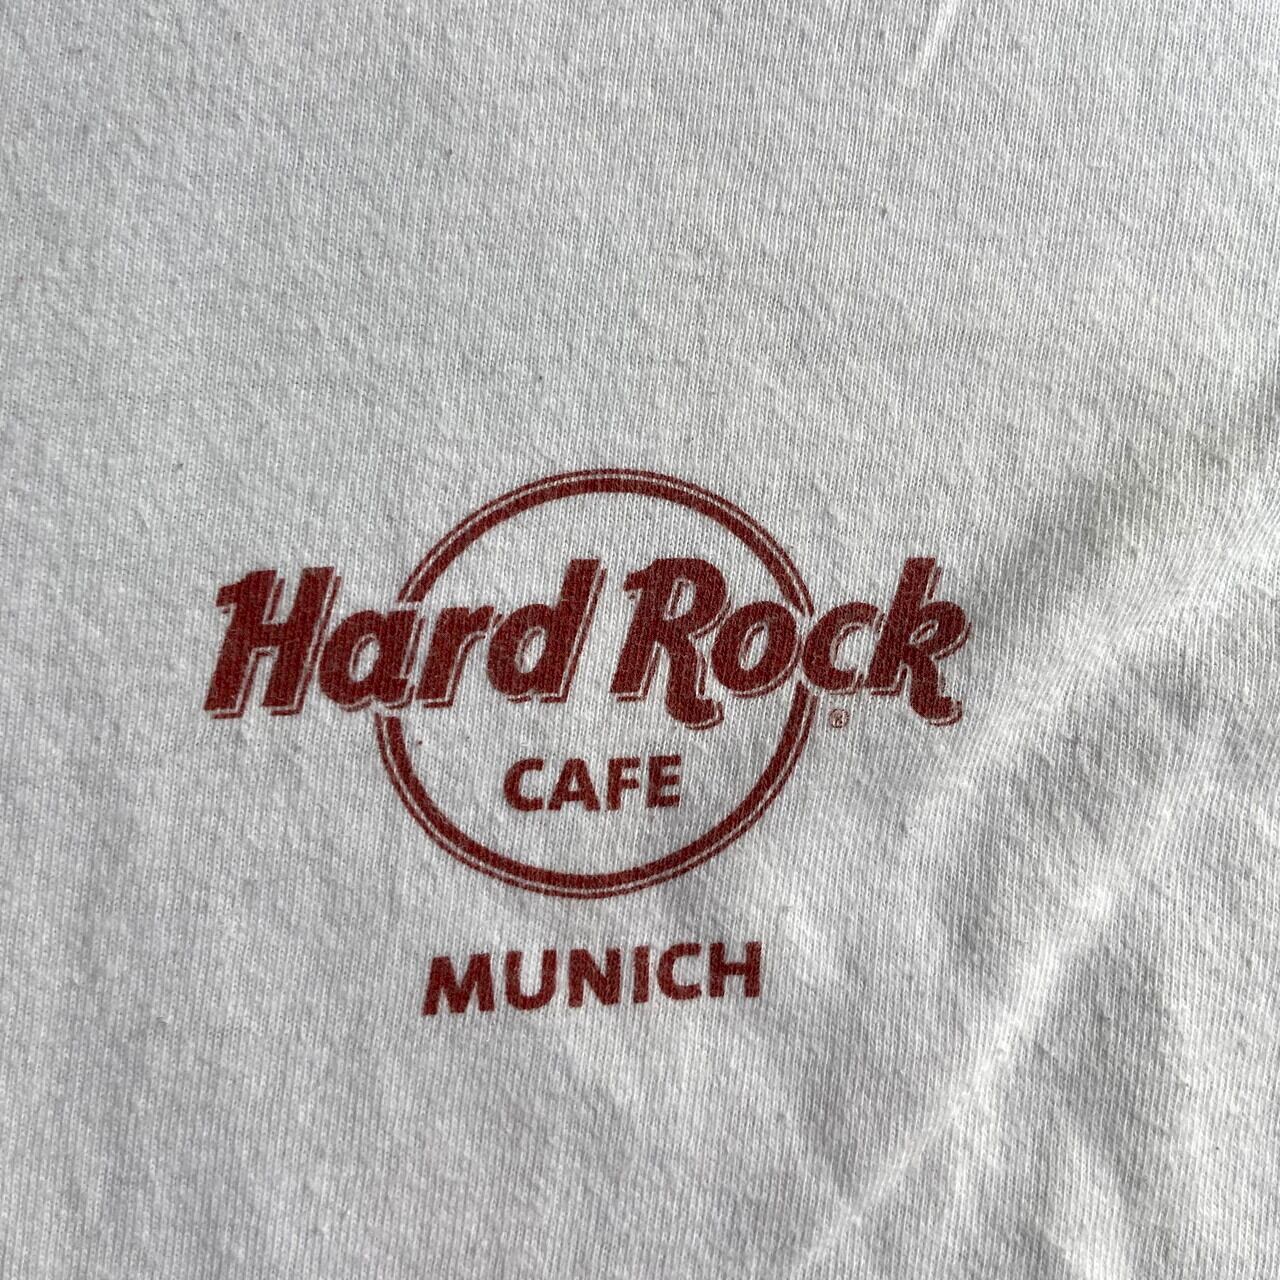 【レア☆】ハードロックカフェ 半袖Tシャツ ホワイト L ミュンヘン